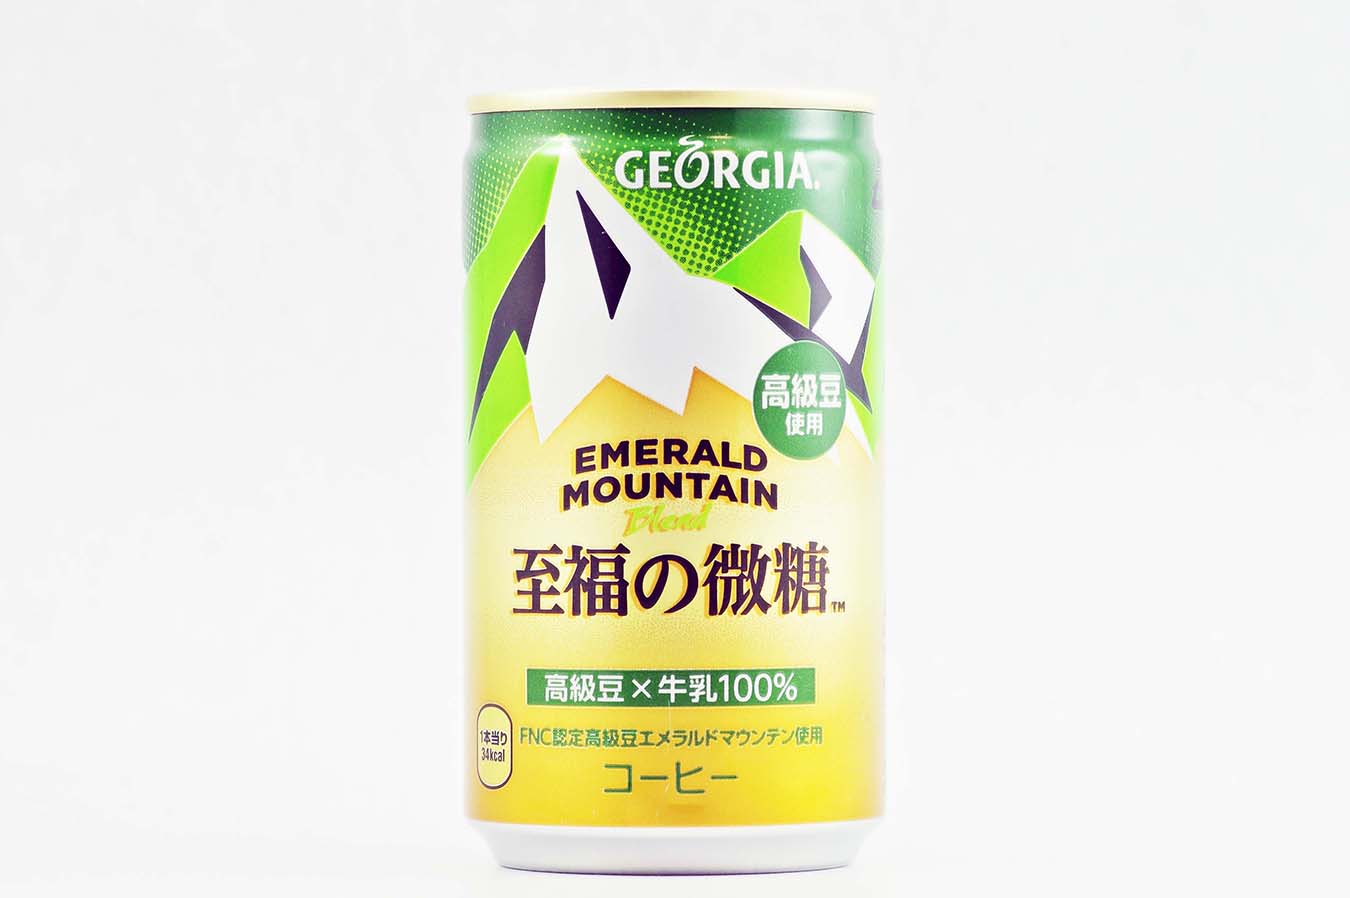 GEORGIA エメラルドマウンテンブレンド 至福の微糖 アルミ缶 170g缶 2015年4月